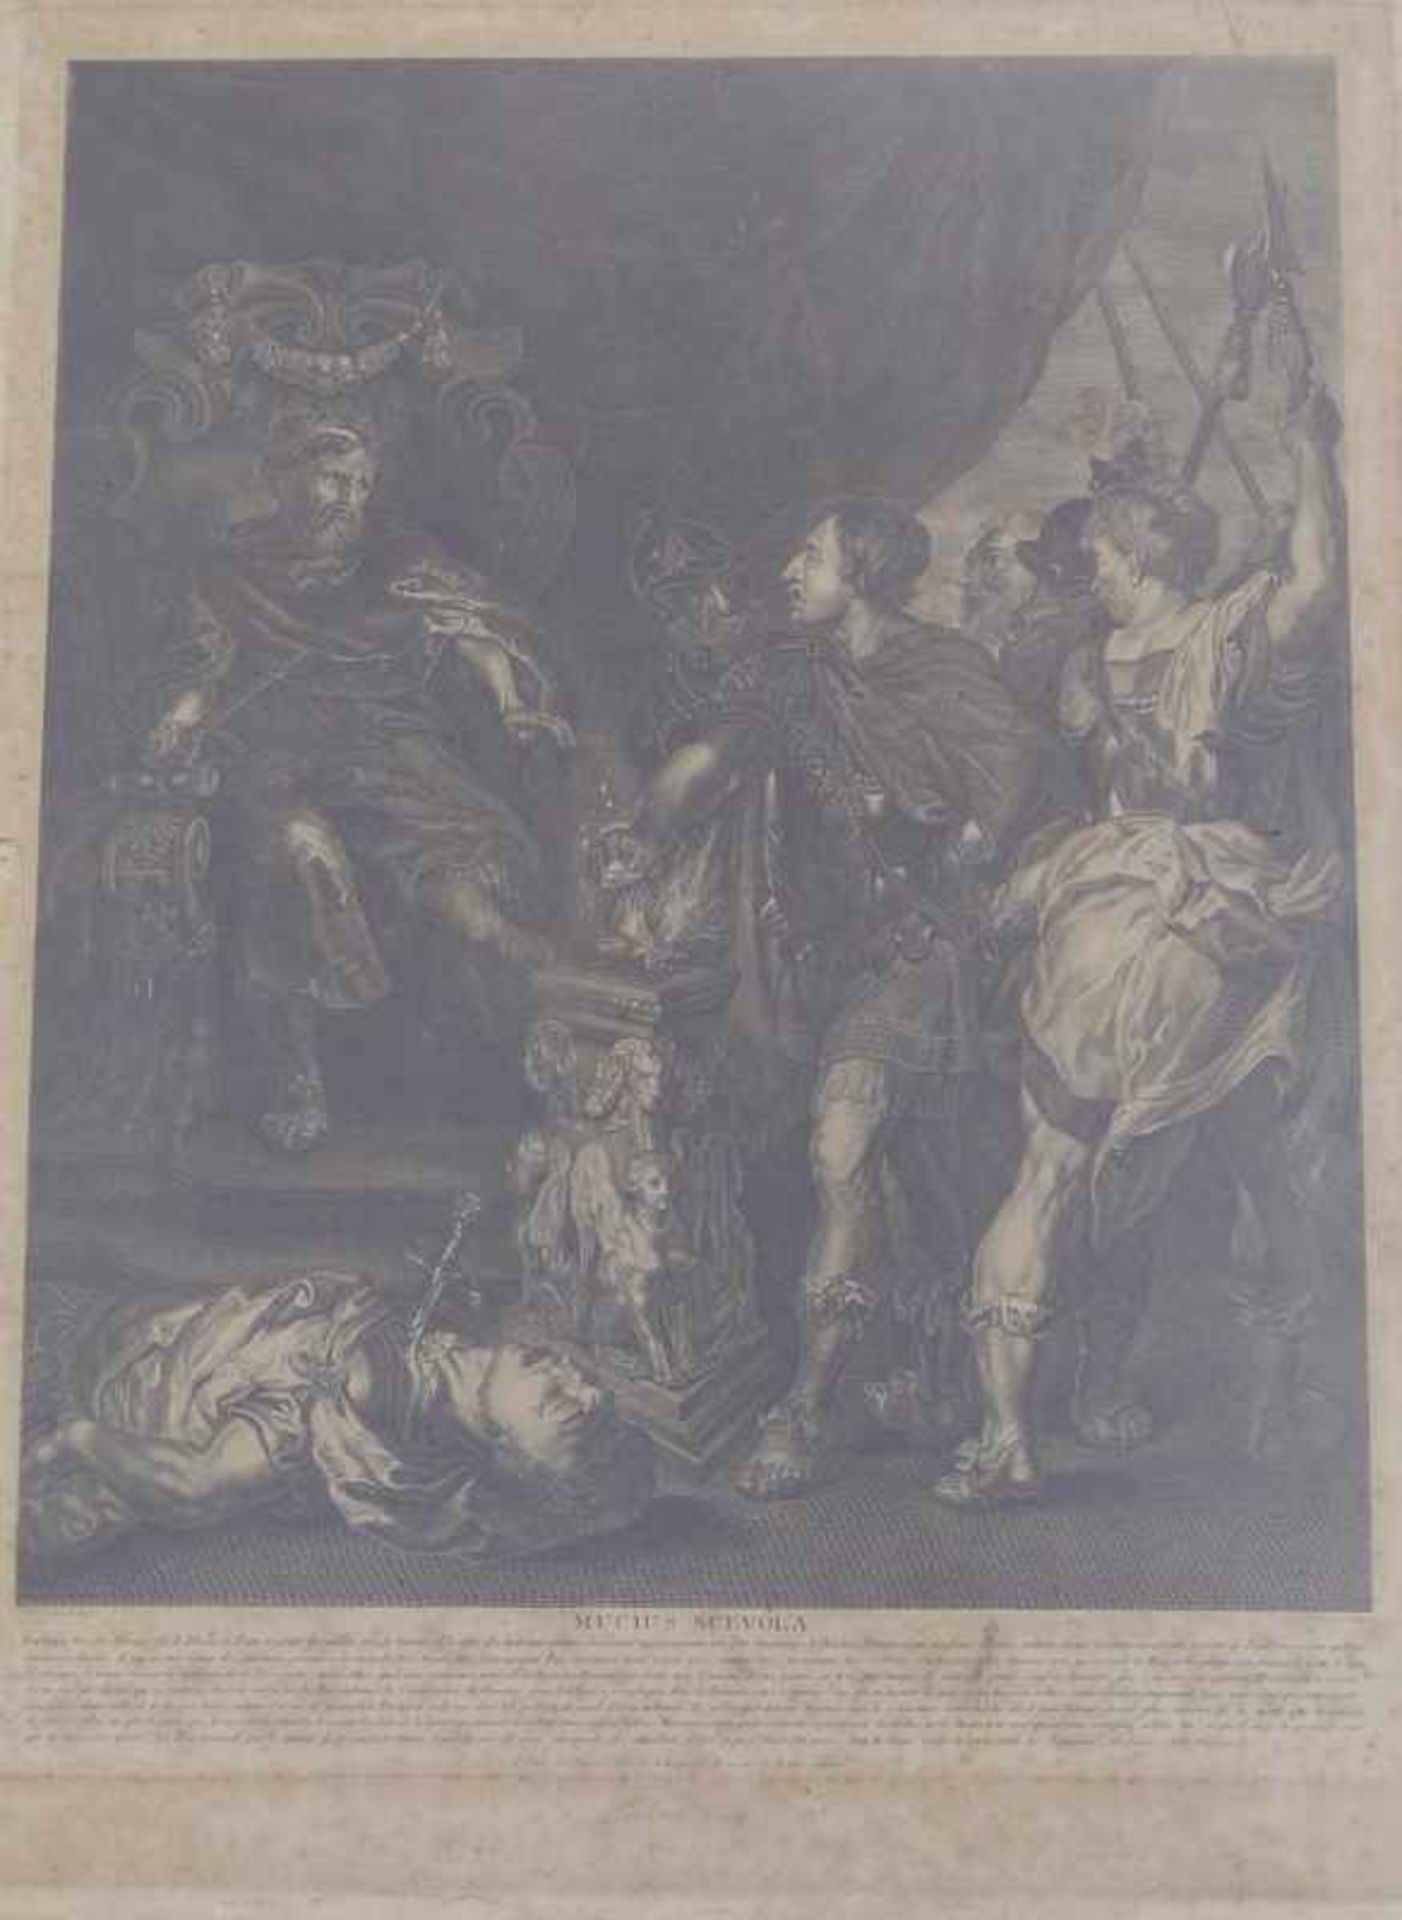 Rubens, Peter Paul, nach (1577 Siegen - 1640 Antwerpen): "Mucius Scevola"Großer Kupferstich auf